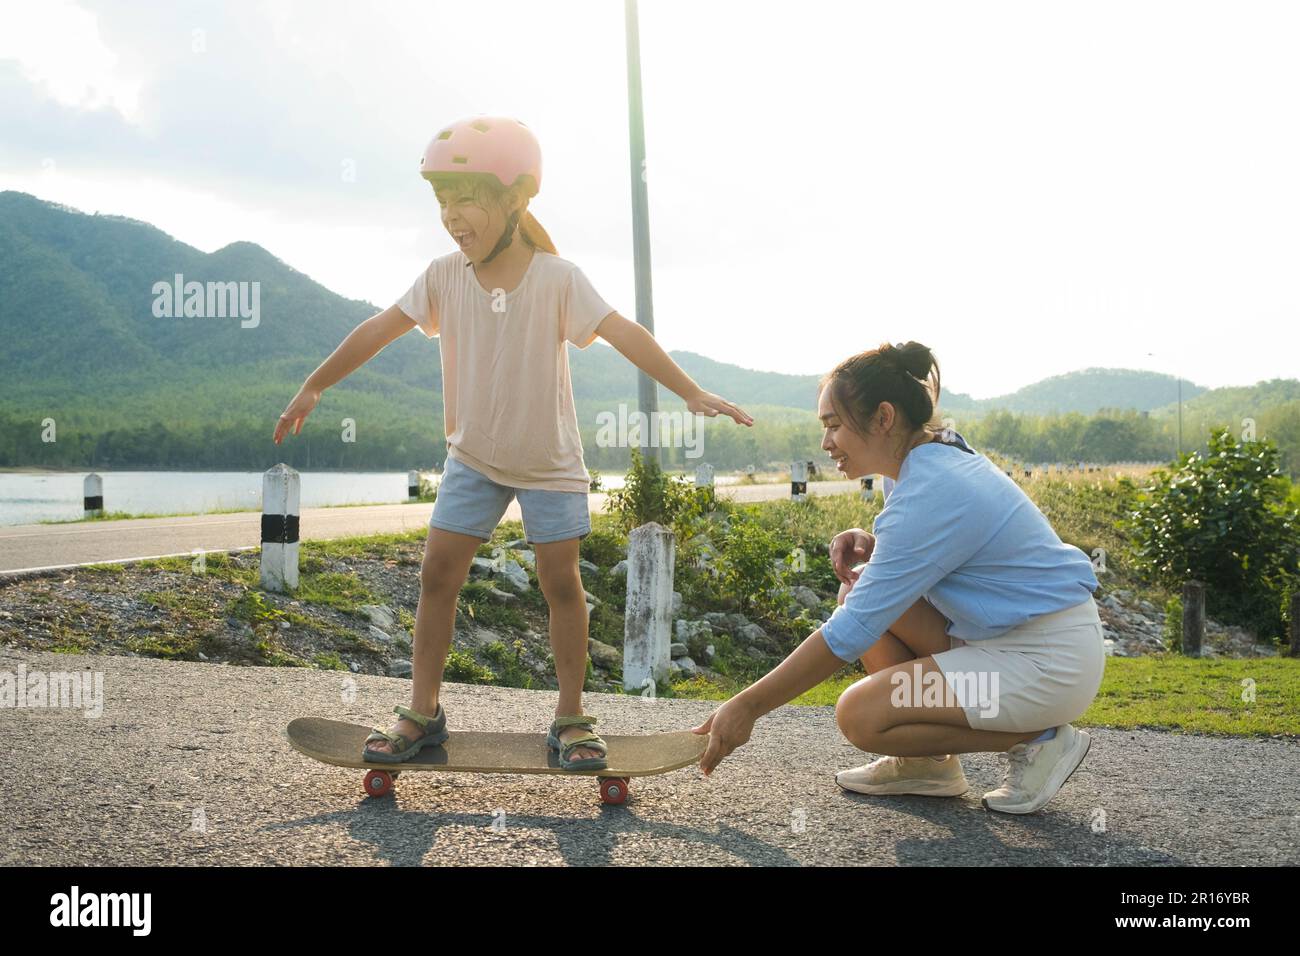 Madre enseñando a su hija a patinar en el parque. Niño montando tabla de skate. Deportes saludables y actividades al aire libre para niños en edad escolar Foto de stock